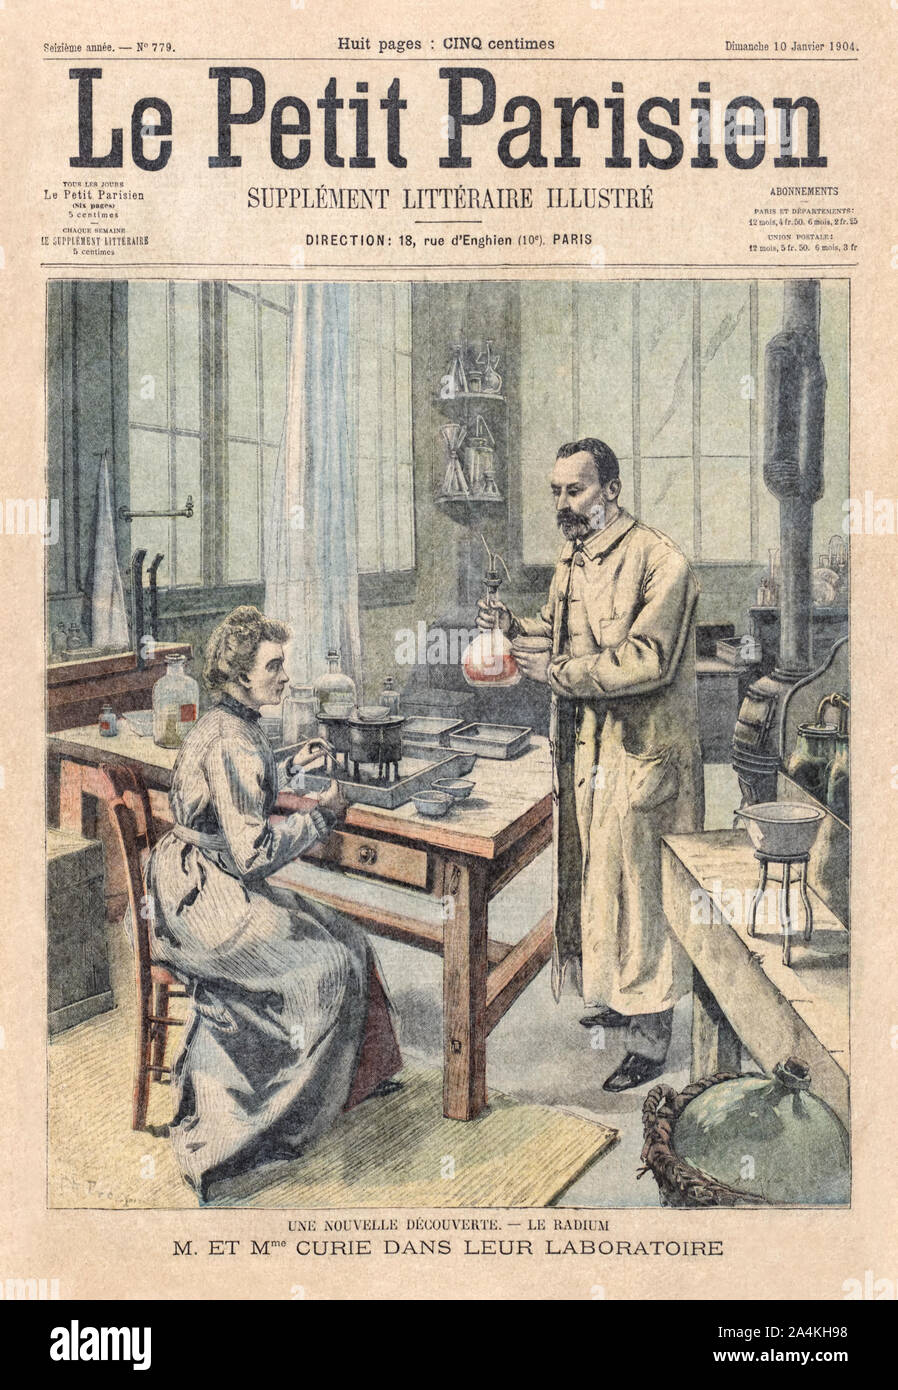 Marie Curie (1867-1934) e Pierre Curie (1859-1906) mostrato conducendo un esperimento sul coperchio del Le Petit Parisien illustrato supplemento letterario 10 gennaio 1904 in onore del loro comune di vincita del premio Nobel per le loro ricerche pionieristiche sulla radioattività poco prima nel 1903. Borse Marie Curie di ospitalità è stata la prima donna ad essere insignito di un premio Nobel. Foto Stock